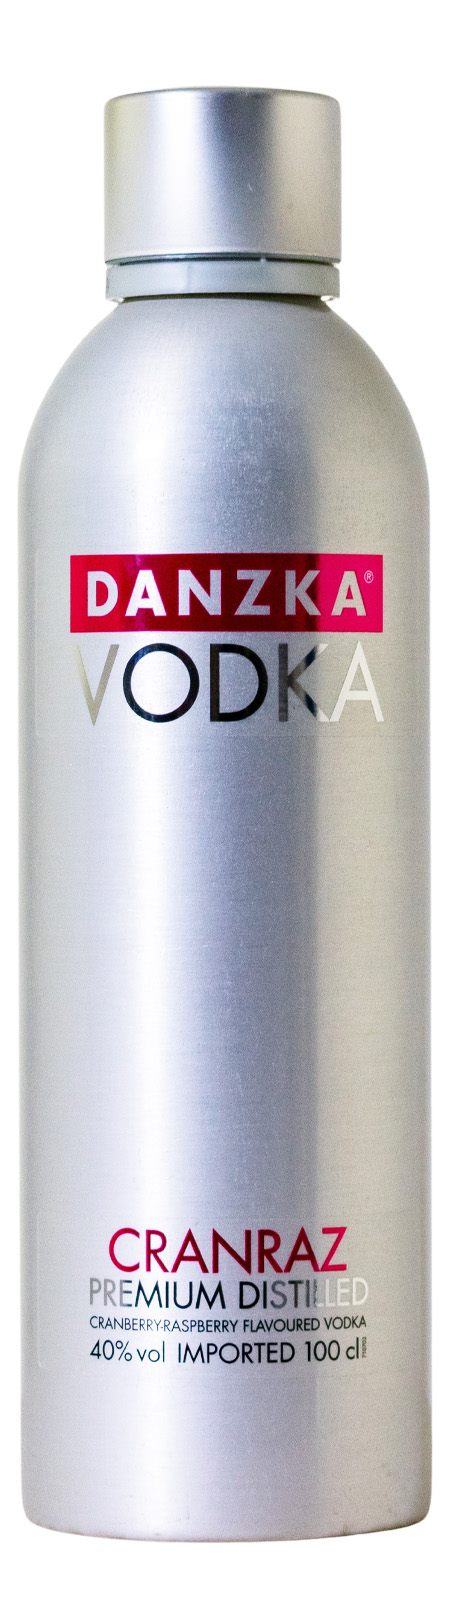 Vodka Danzka kaufen Danish günstig Cranraz (1L)